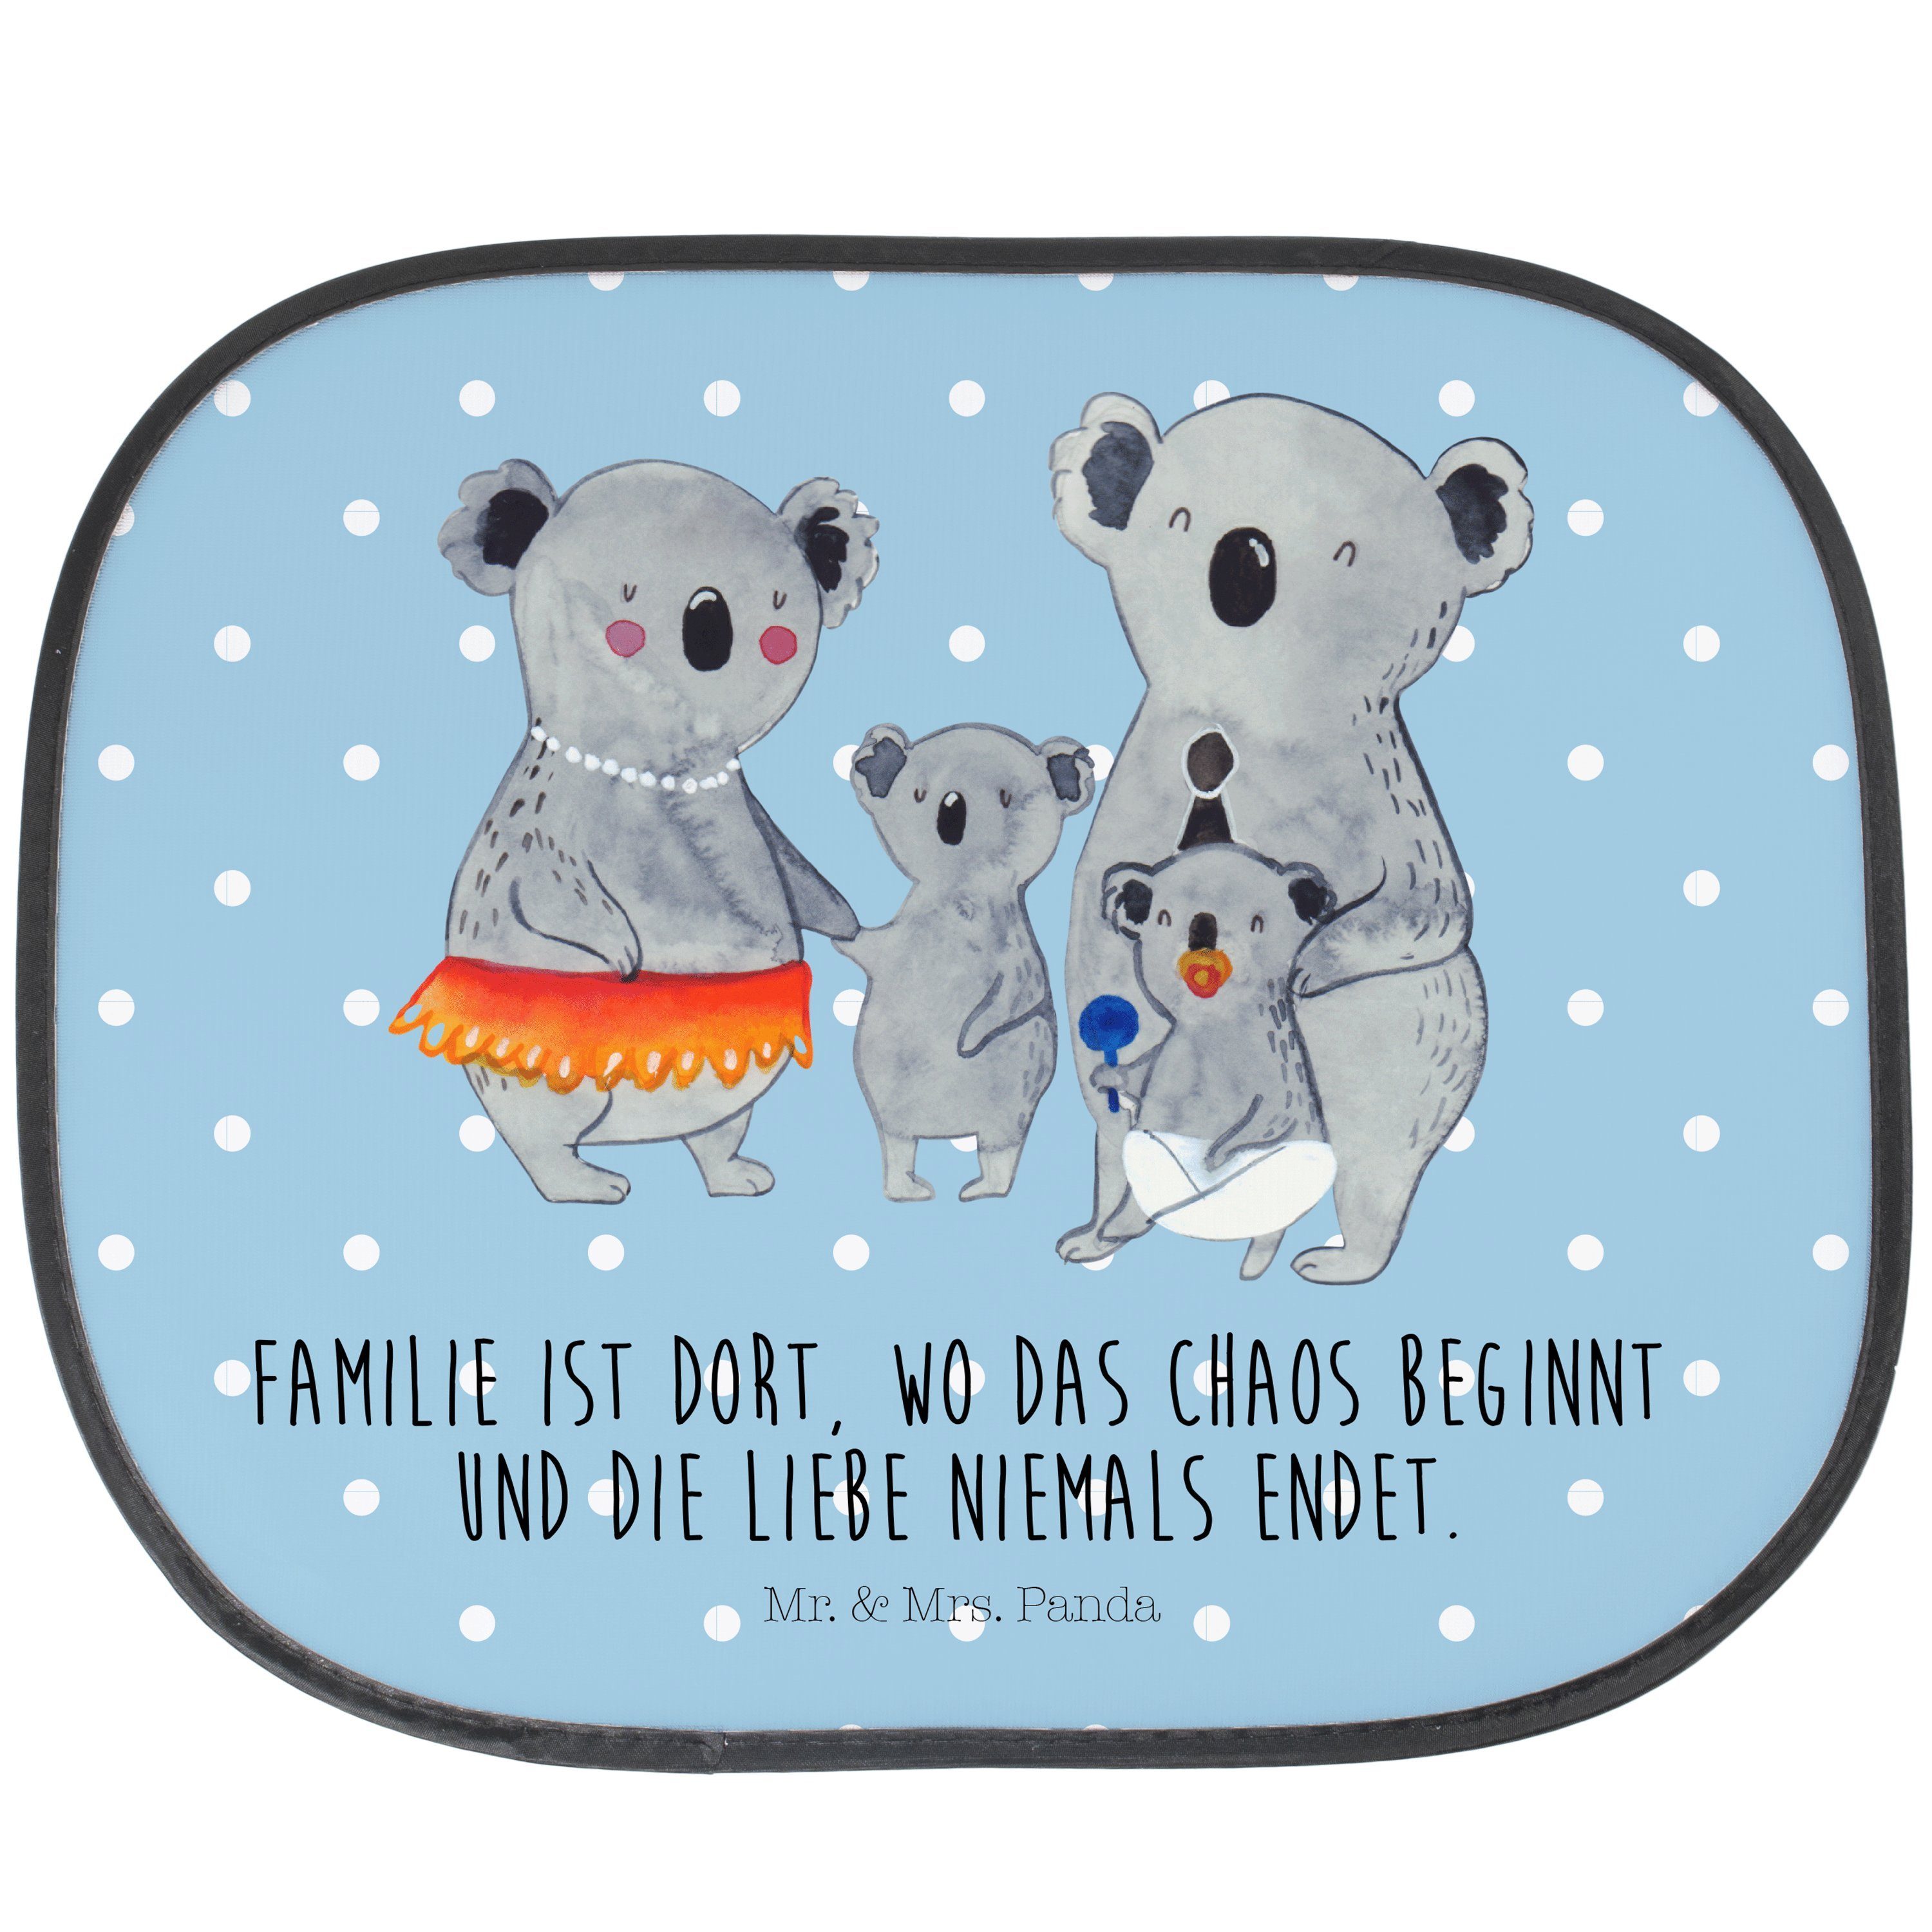 Sonnenschutz Koala Familie - Blau Pastell - Geschenk, Kinder, Oma, Sonnenschutz Ba, Mr. & Mrs. Panda, Seidenmatt